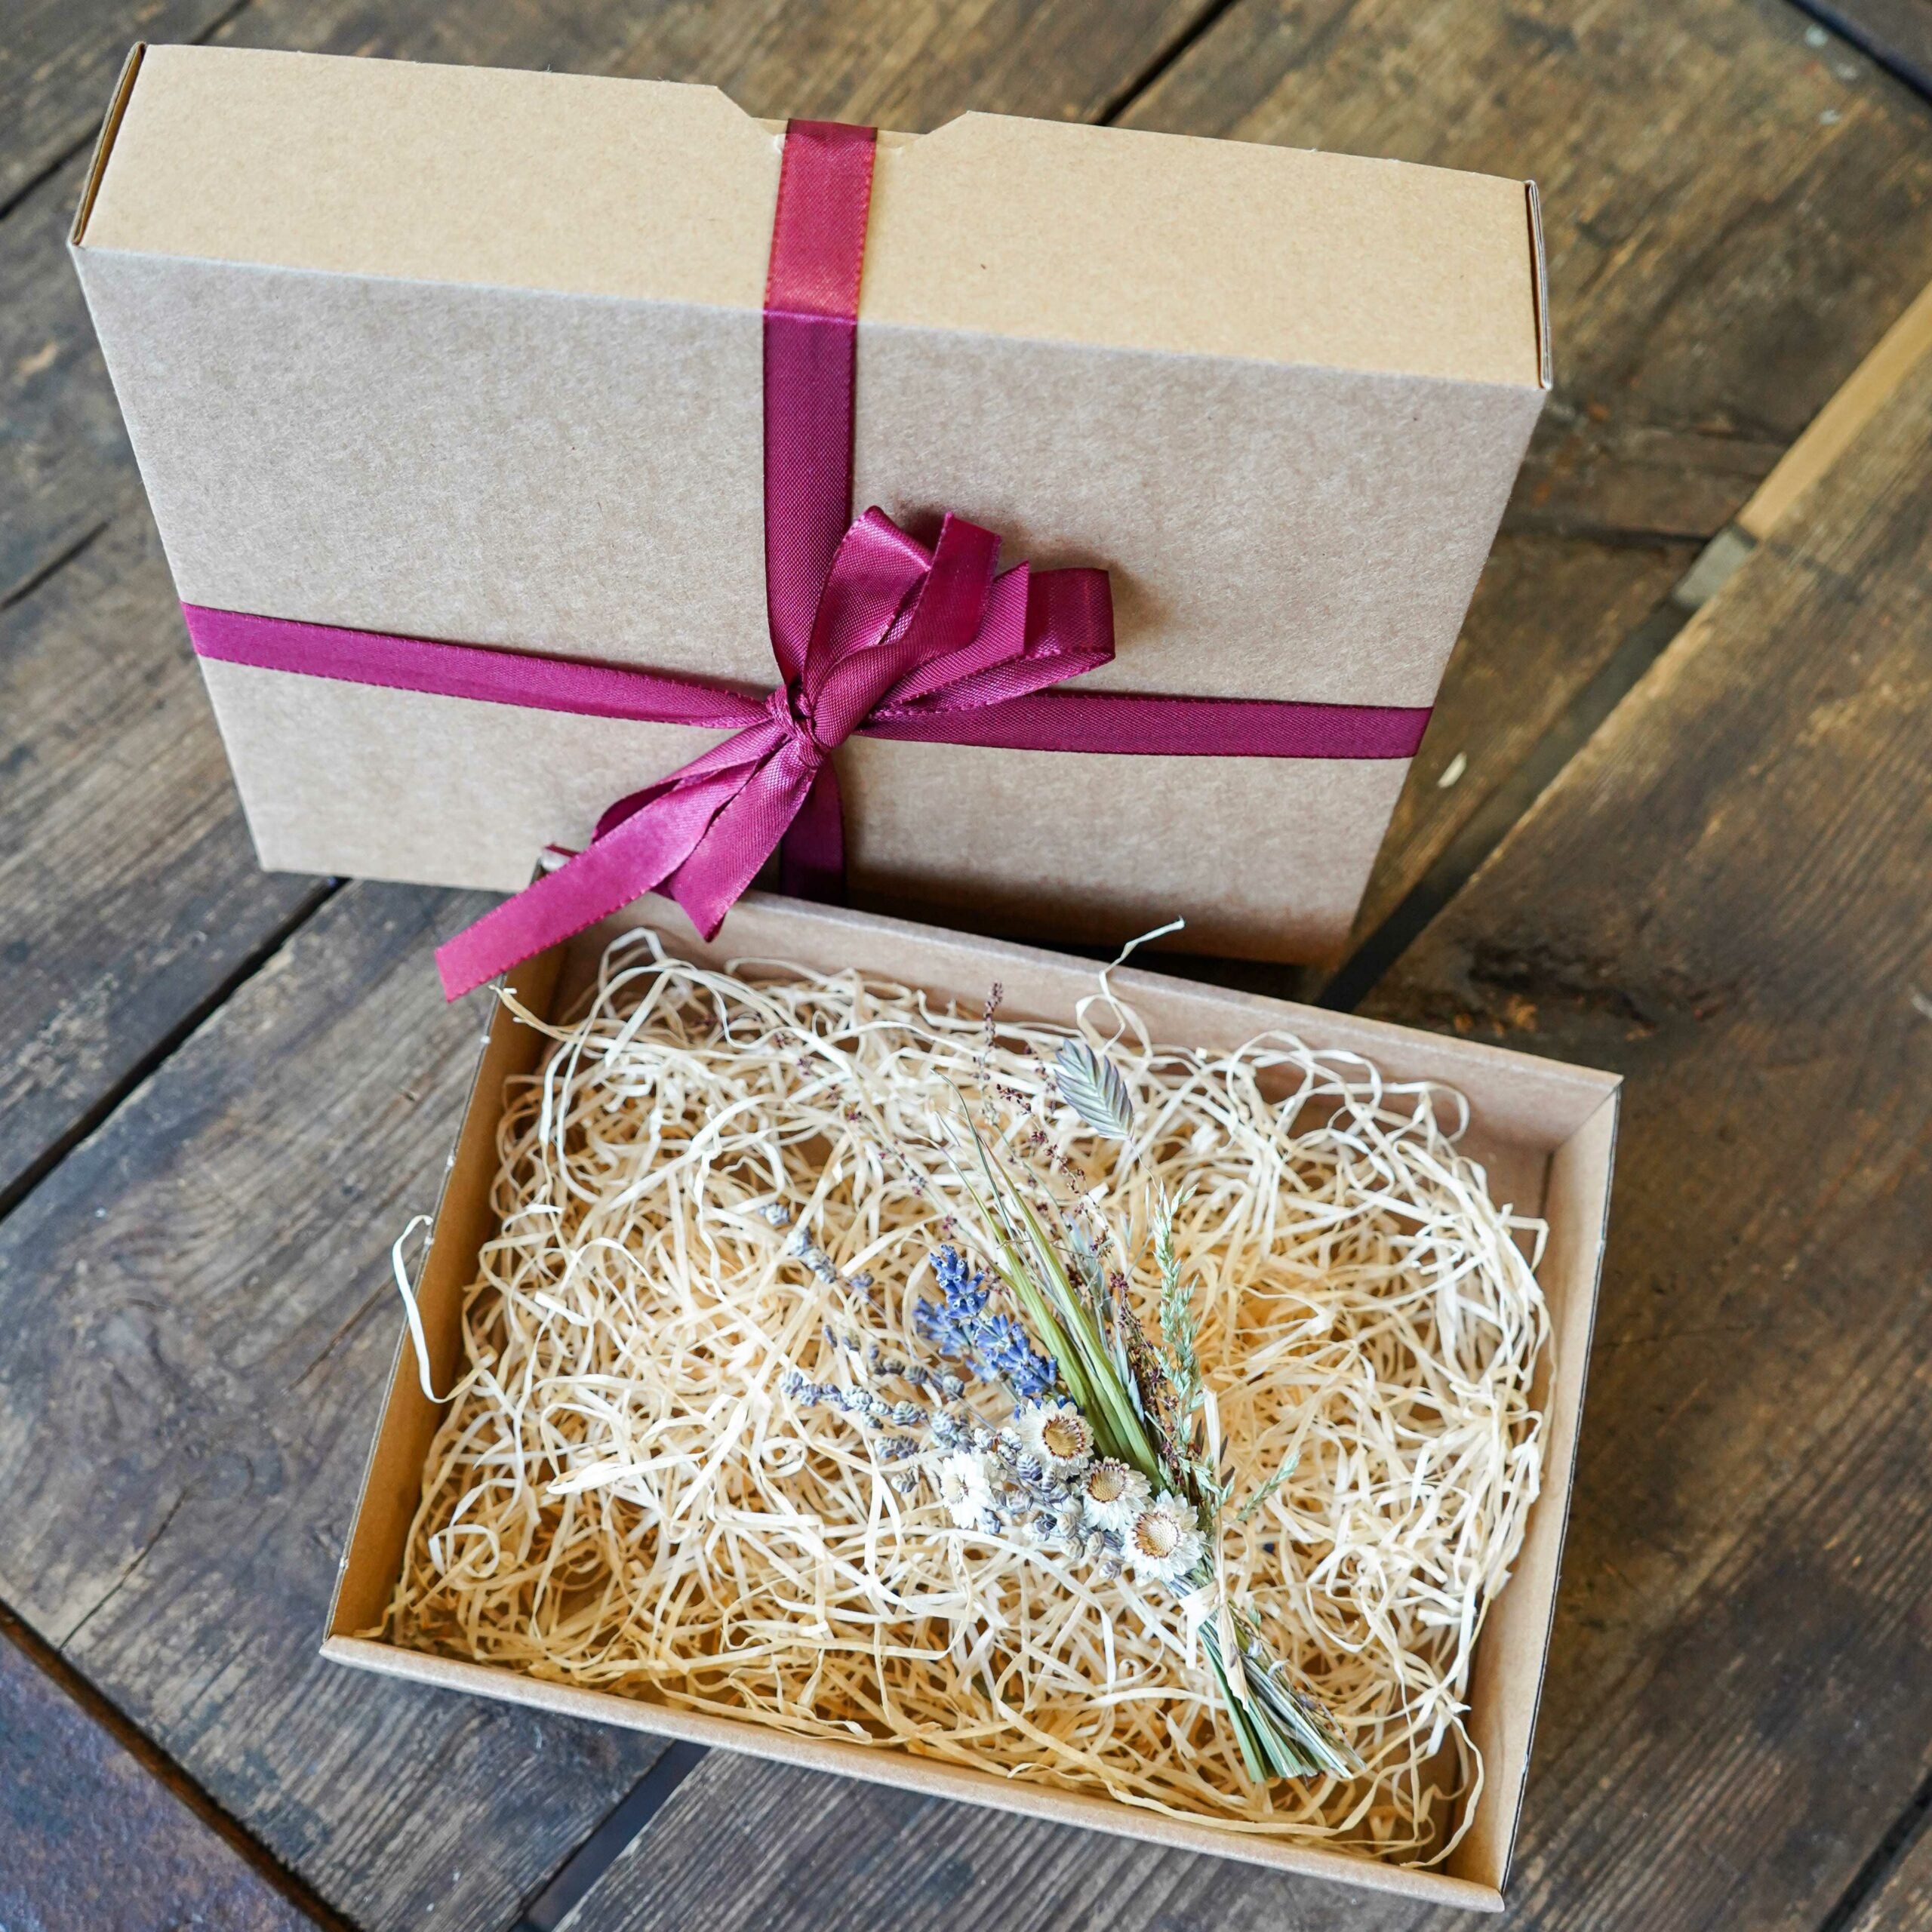 Geschenkebox zum Selber füllen mit Holzwolle, getrocknetem Blumenstrauß und schöner Schleife liebevoll verpackt